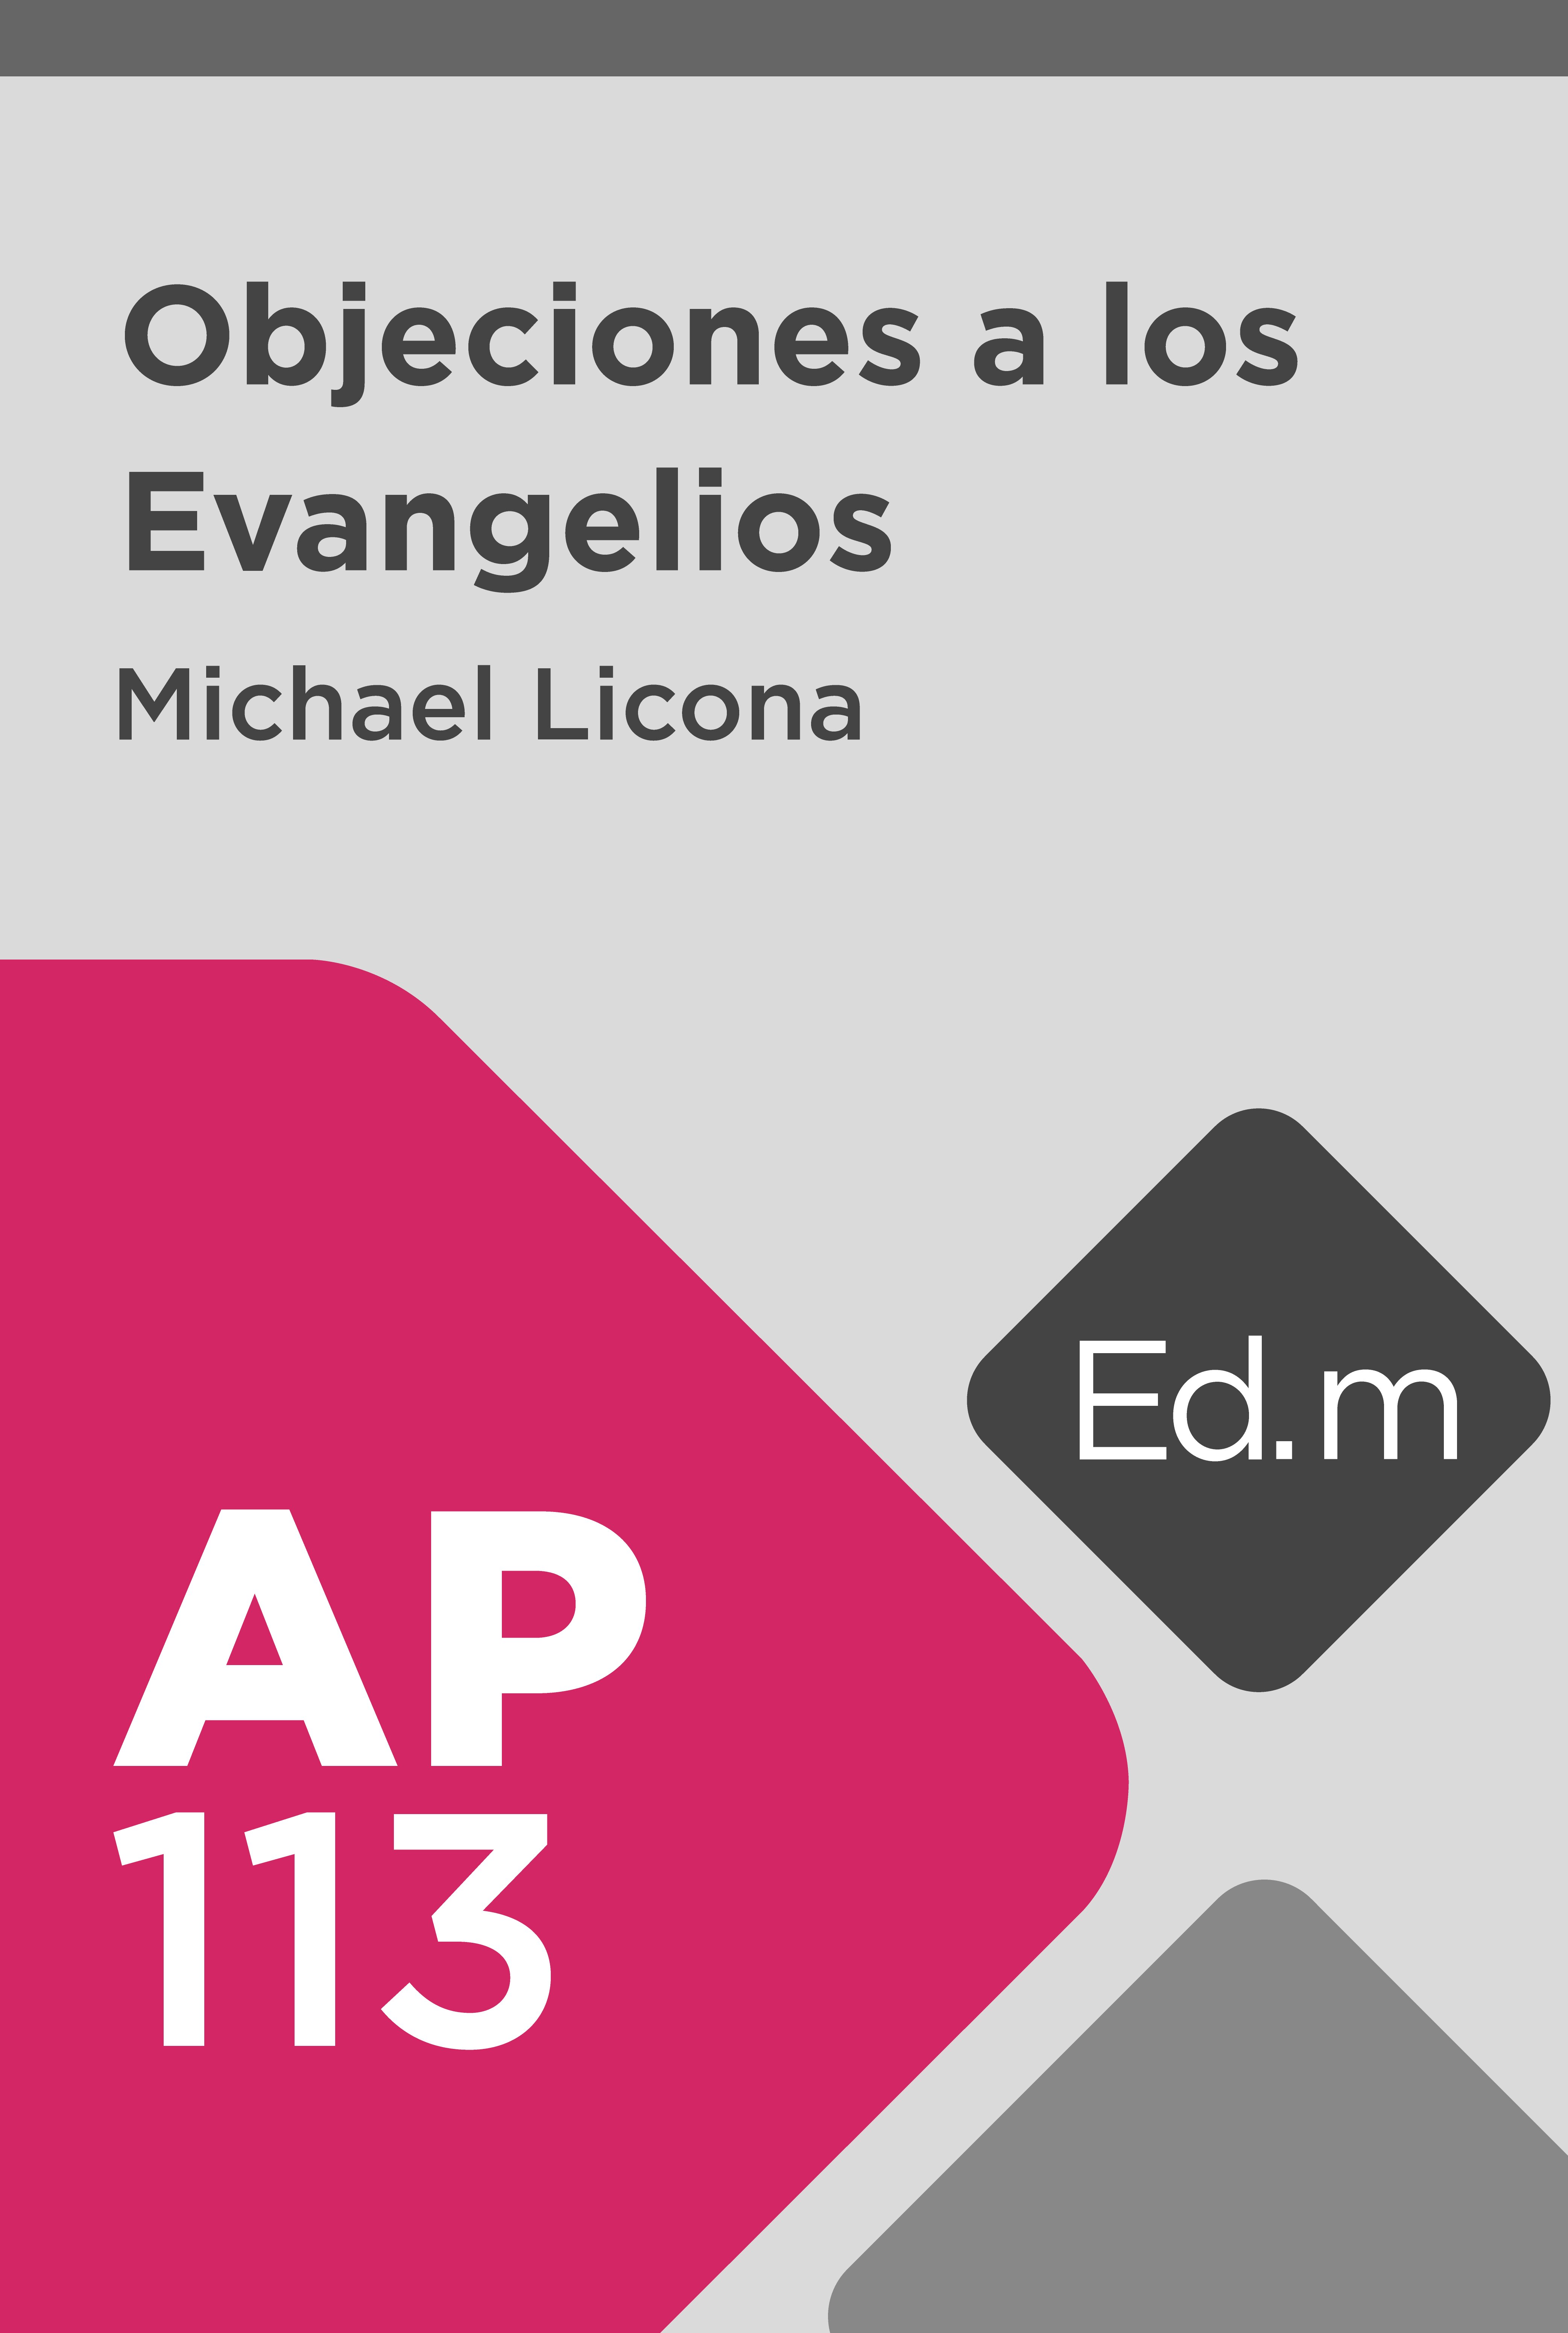 Ed. Móvil: AP113 Objeciones a los Evangelios